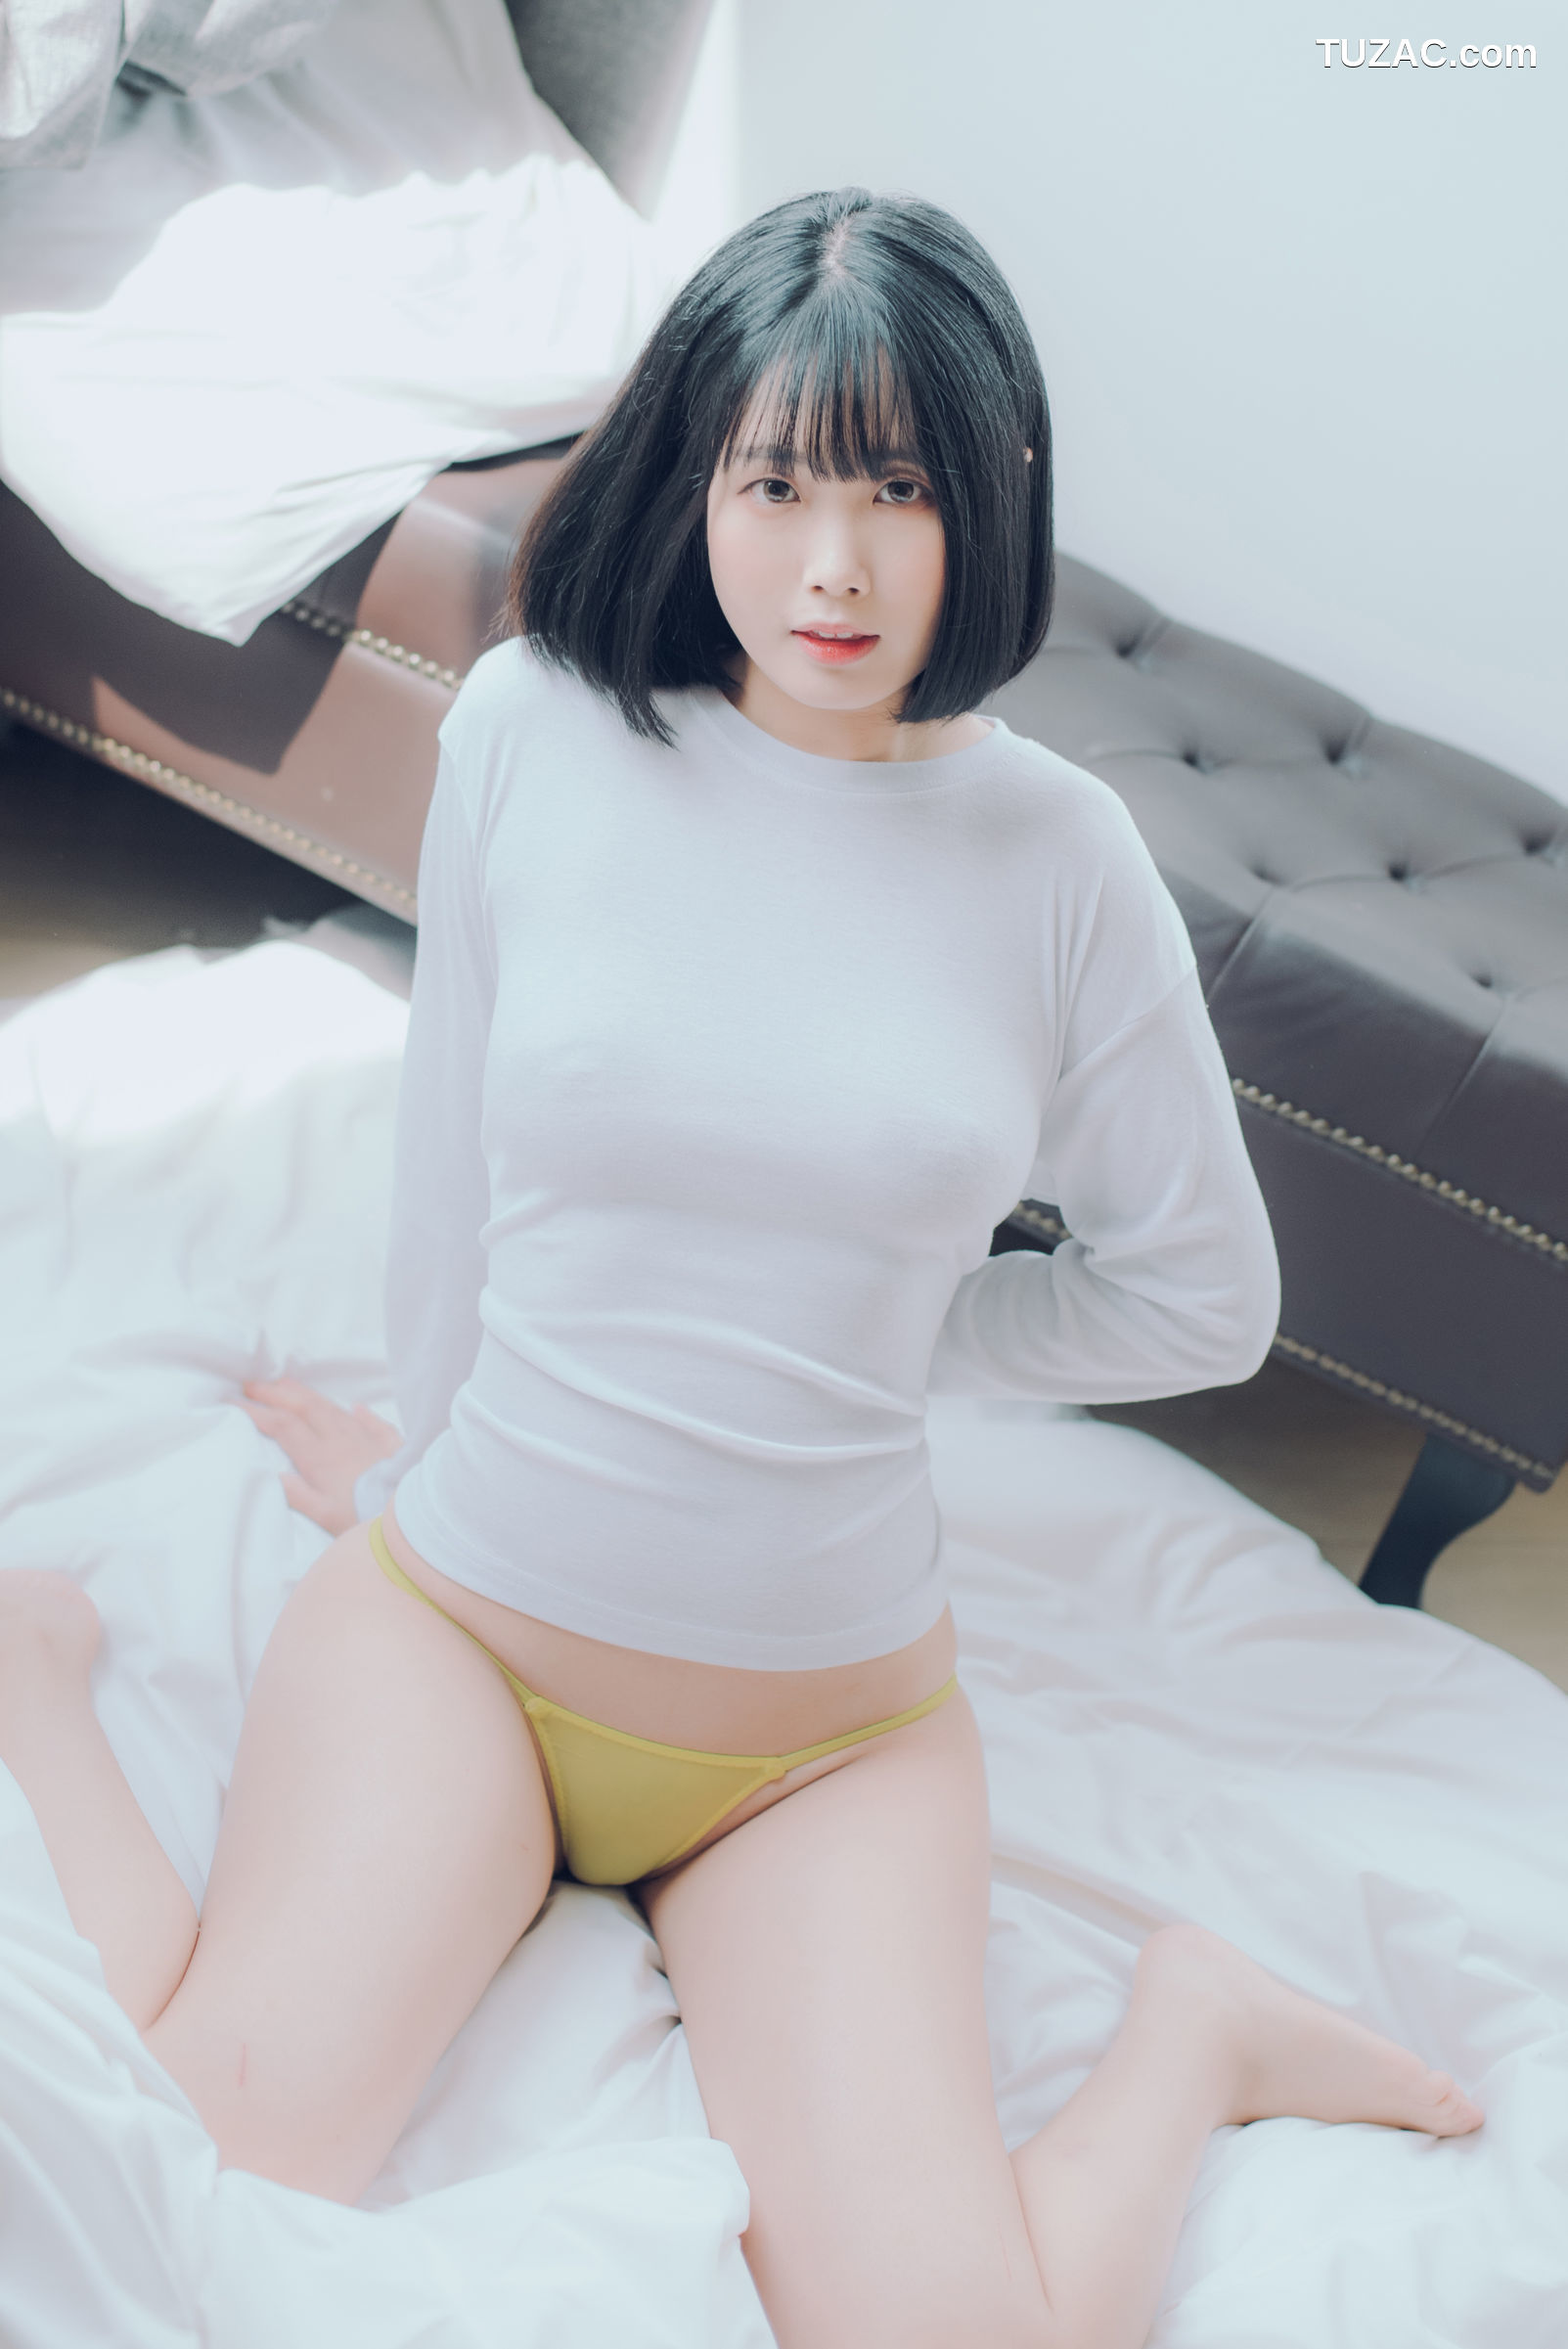 韩国美女-Leechu-短发清纯少女-Pure-Media-Vol.080